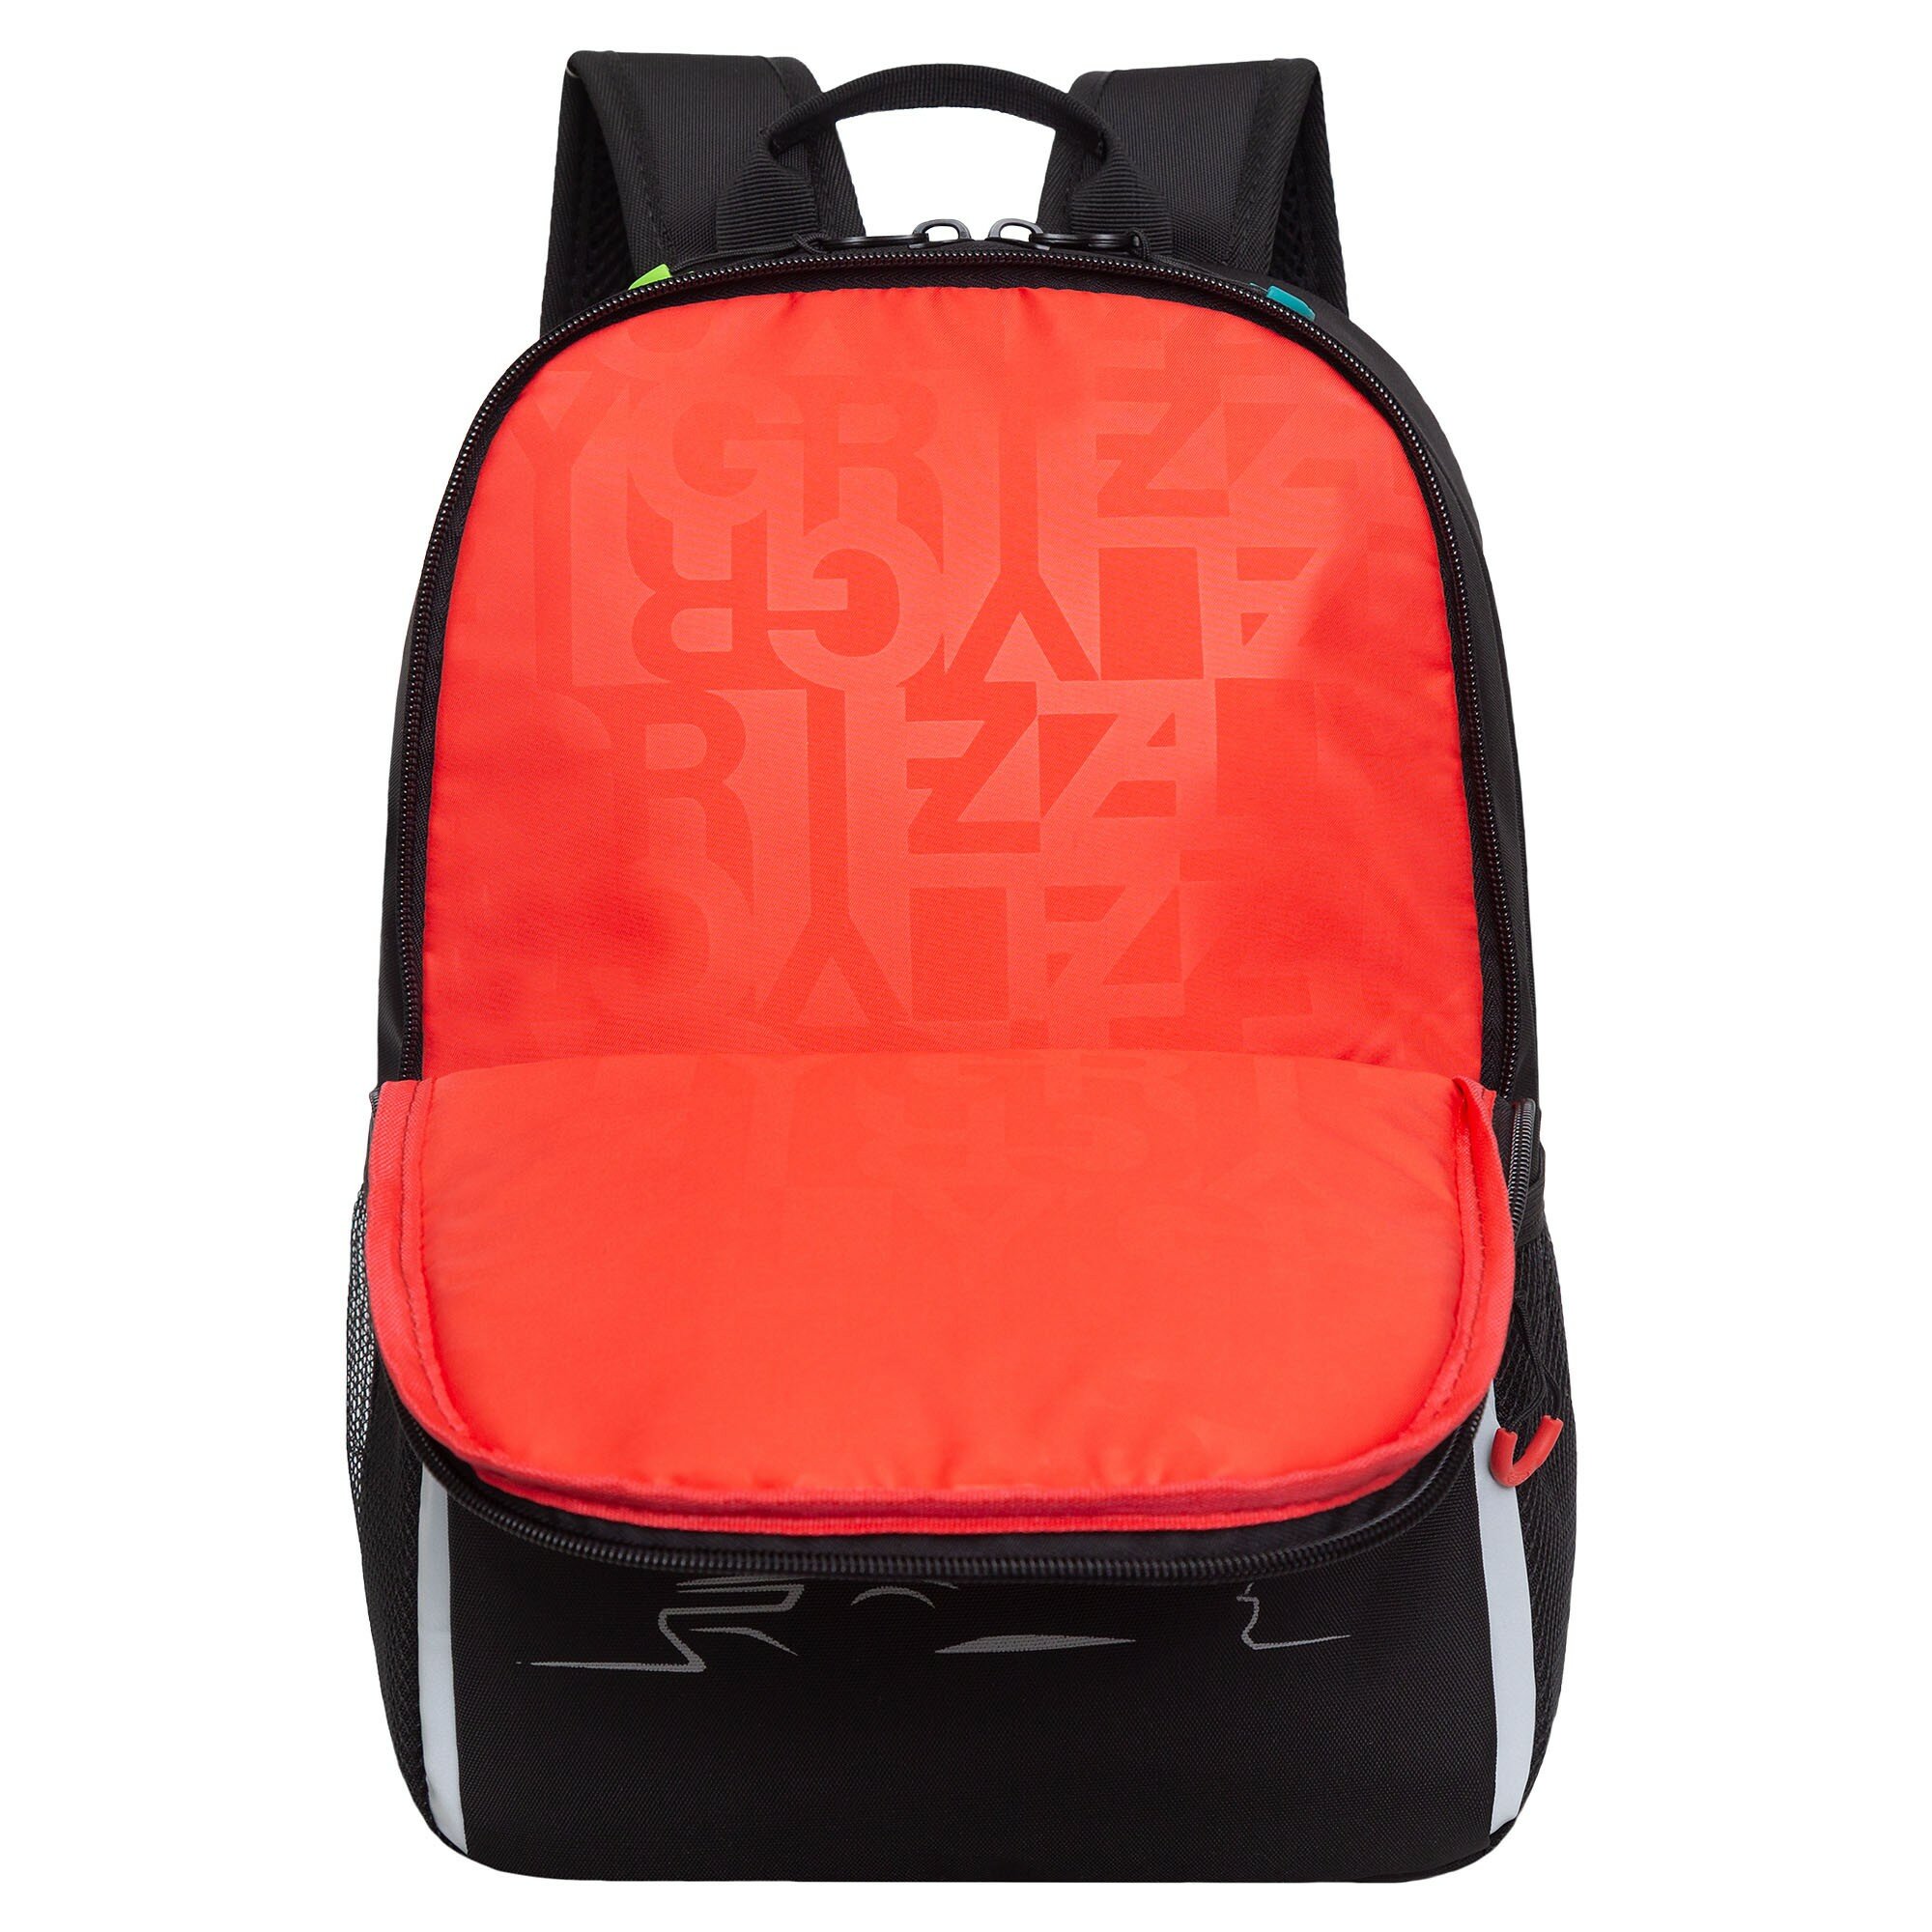 Рюкзак школьный GRIZZLY легкий с жесткой спинкой, двумя отделениями, для мальчика RB-351-3/1